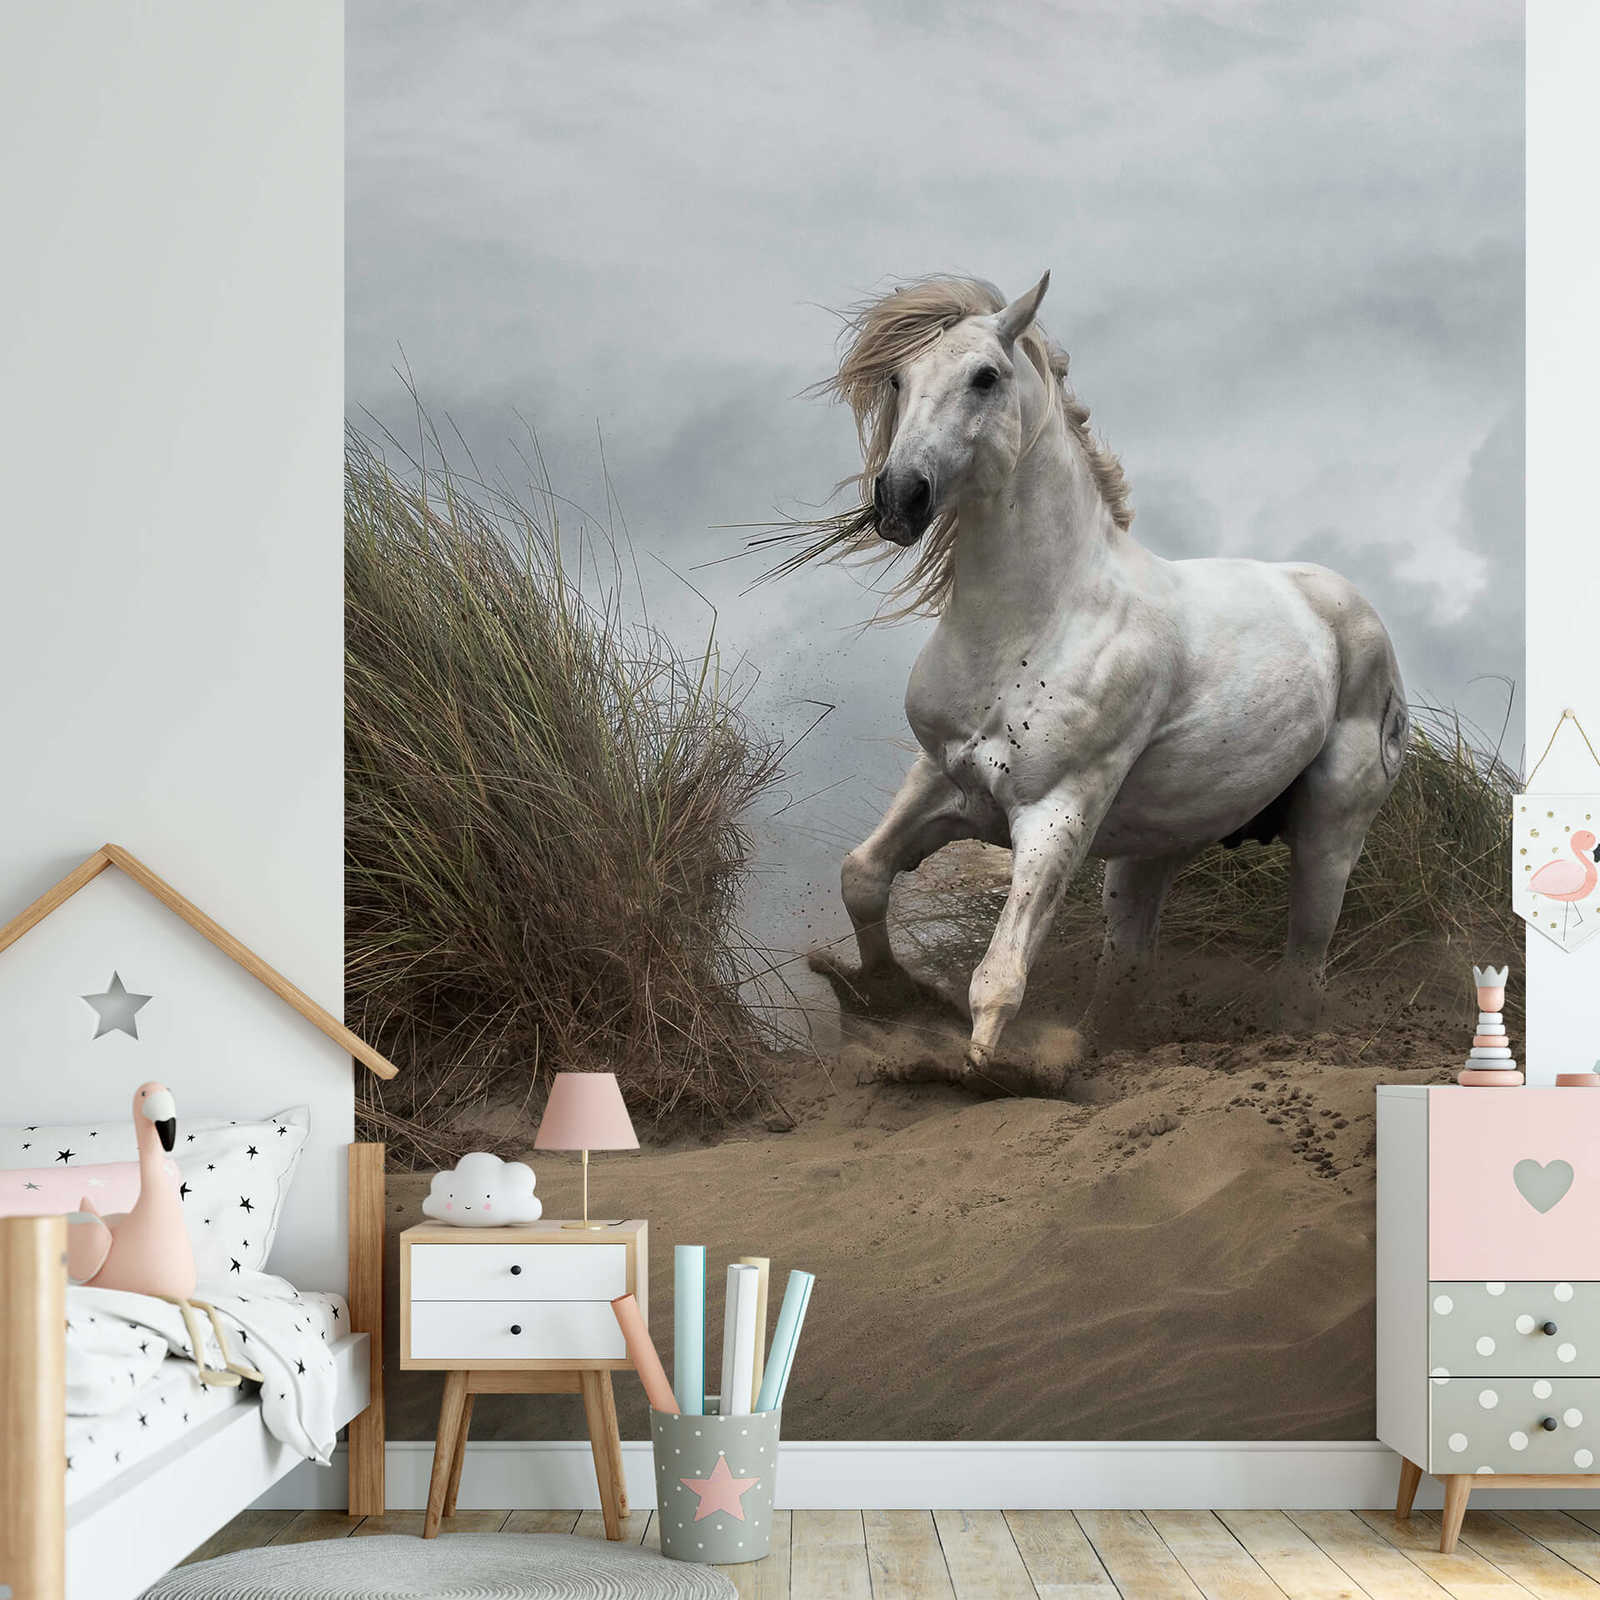             Fototapete Strand Dünen mit Pferd – Weiß, Creme, Grau
        